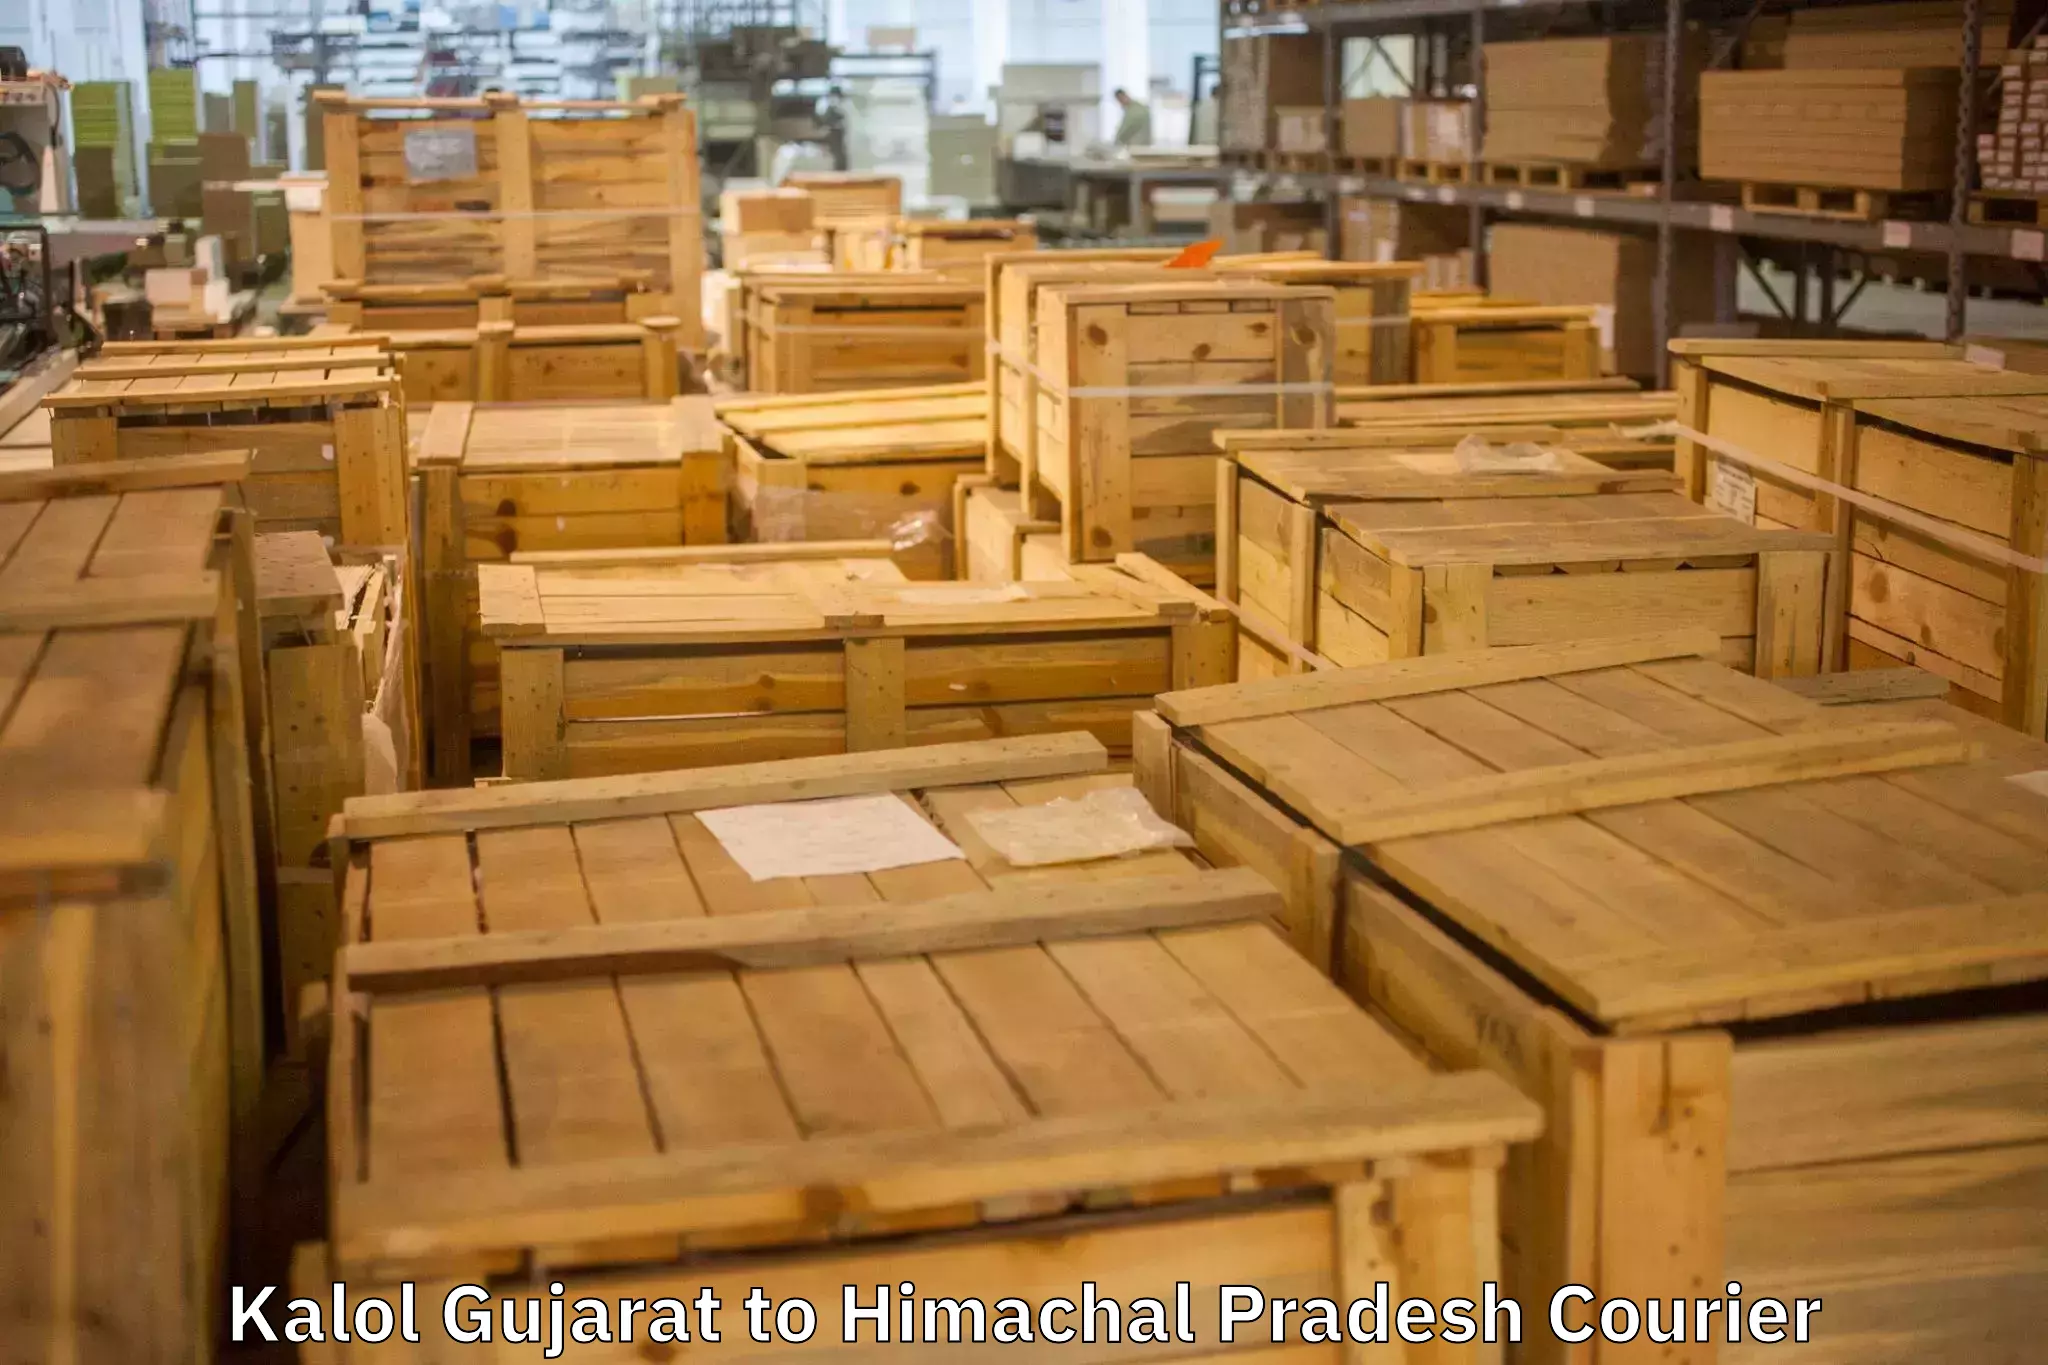 Dependable furniture transport Kalol Gujarat to Himachal Pradesh